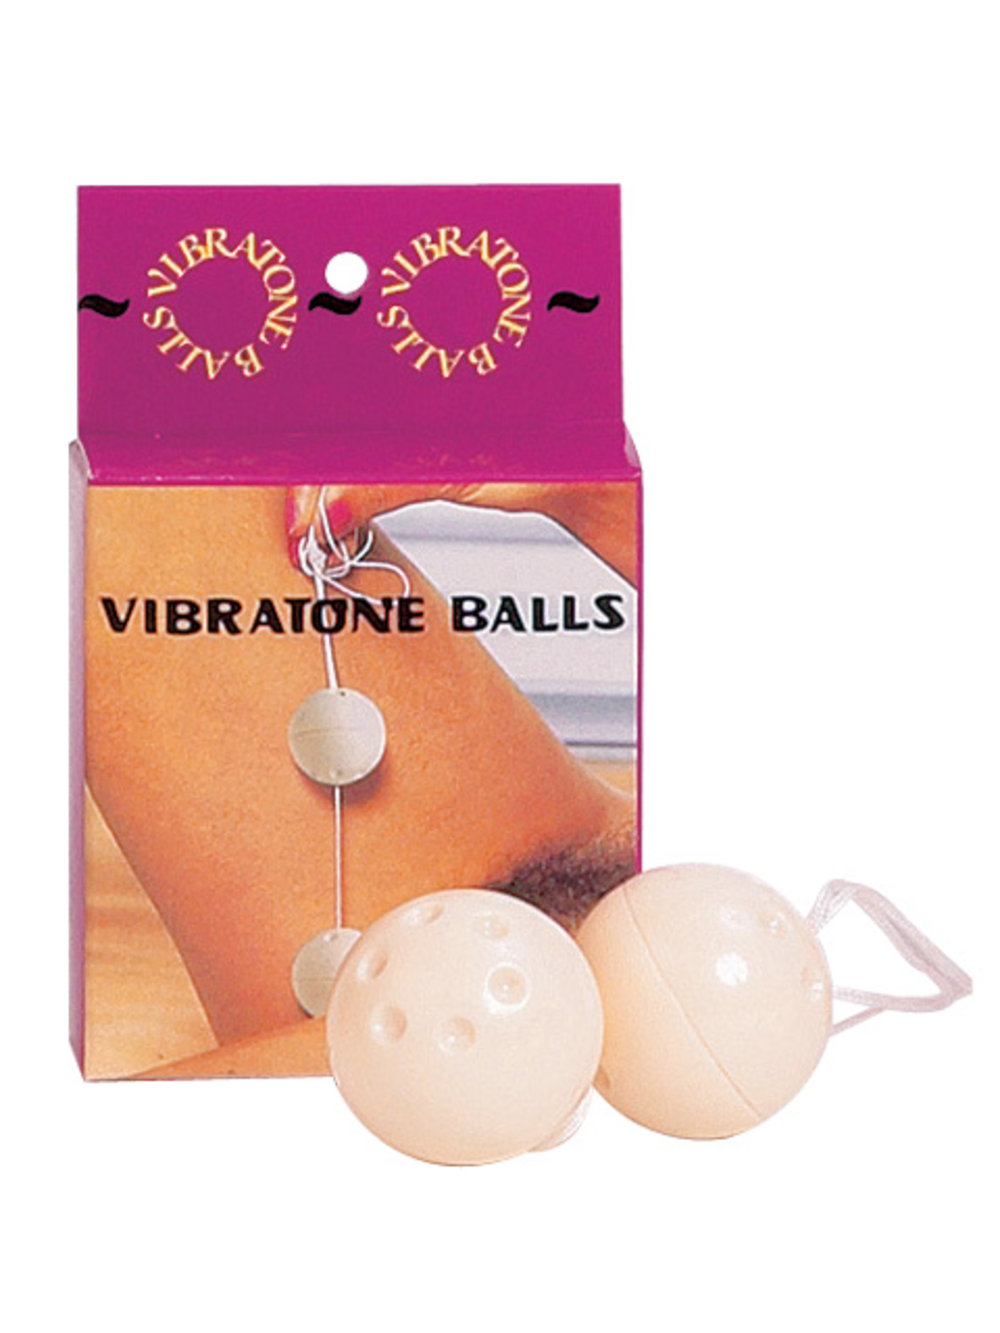 Вагинальные шарики "Vibratone balls", арт. 24.81